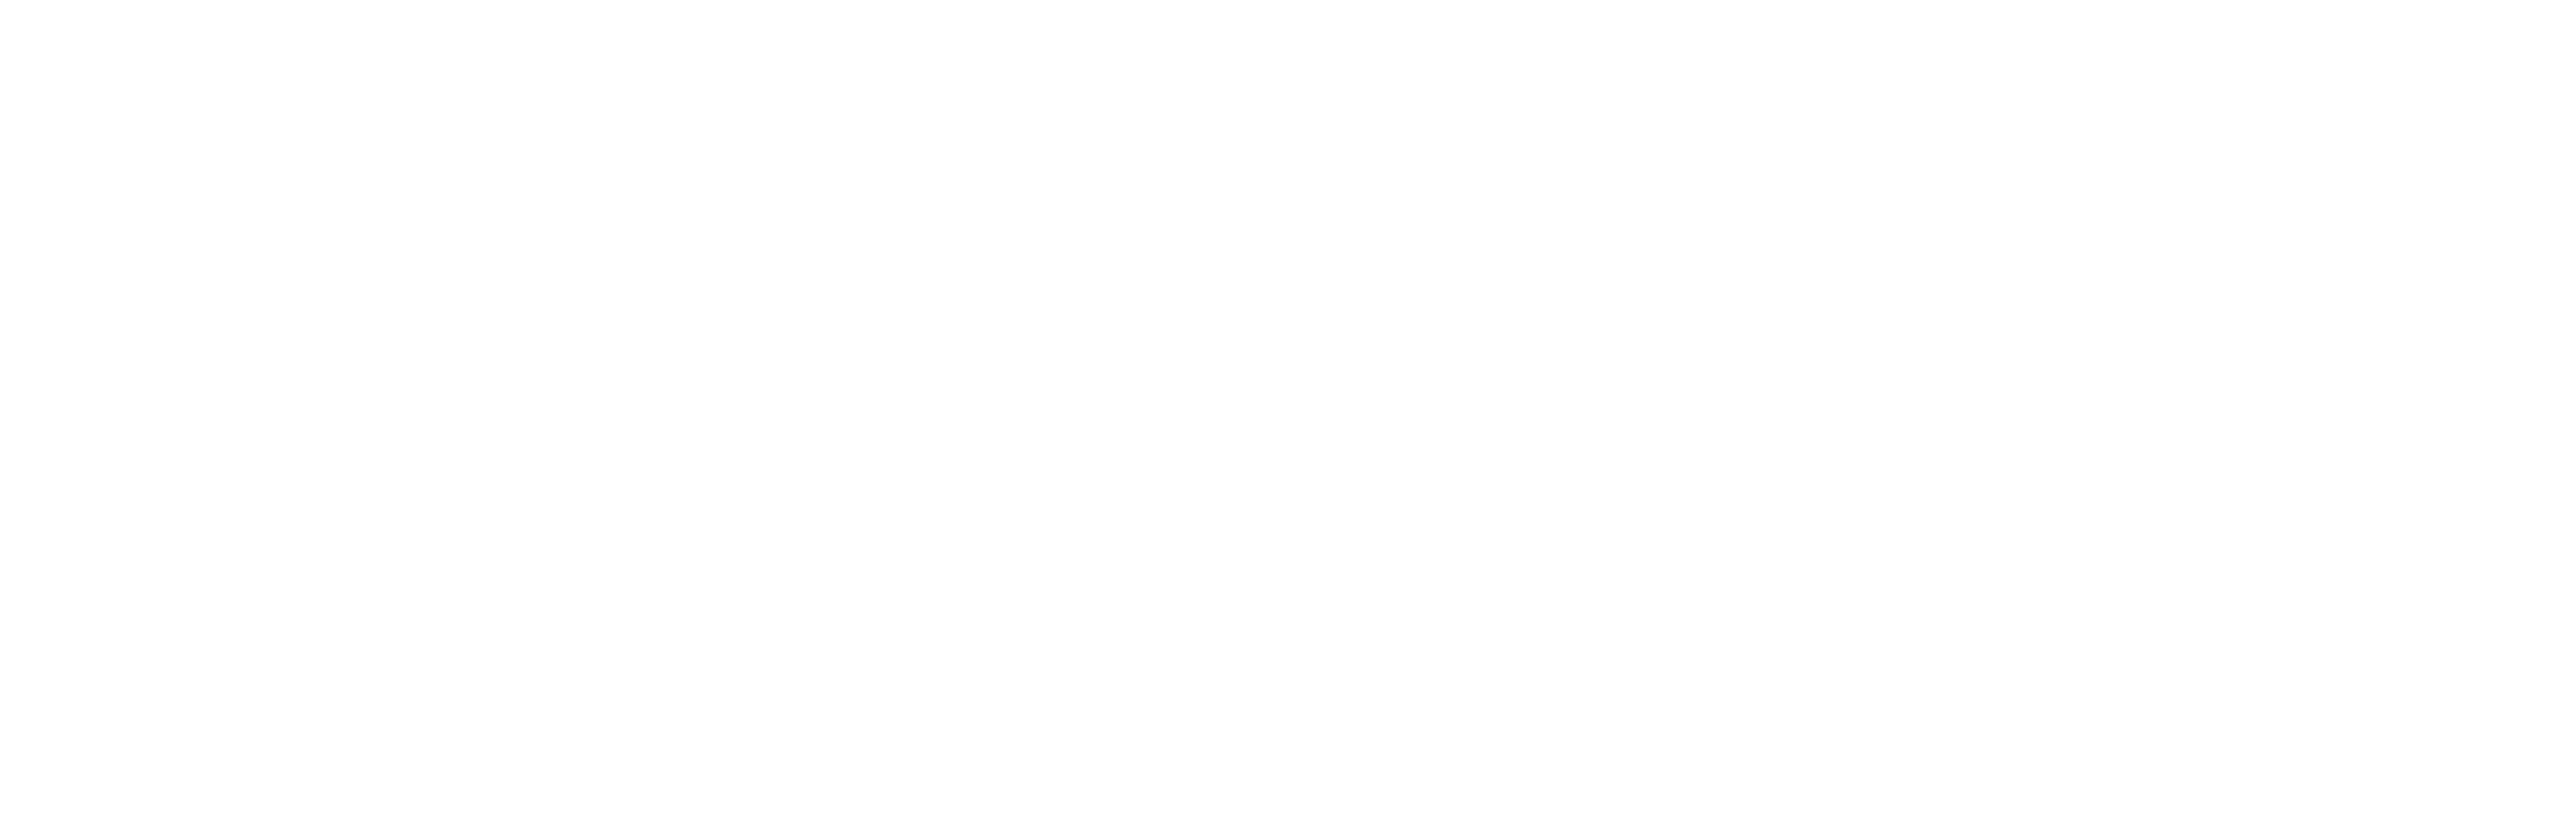 In De Kroon